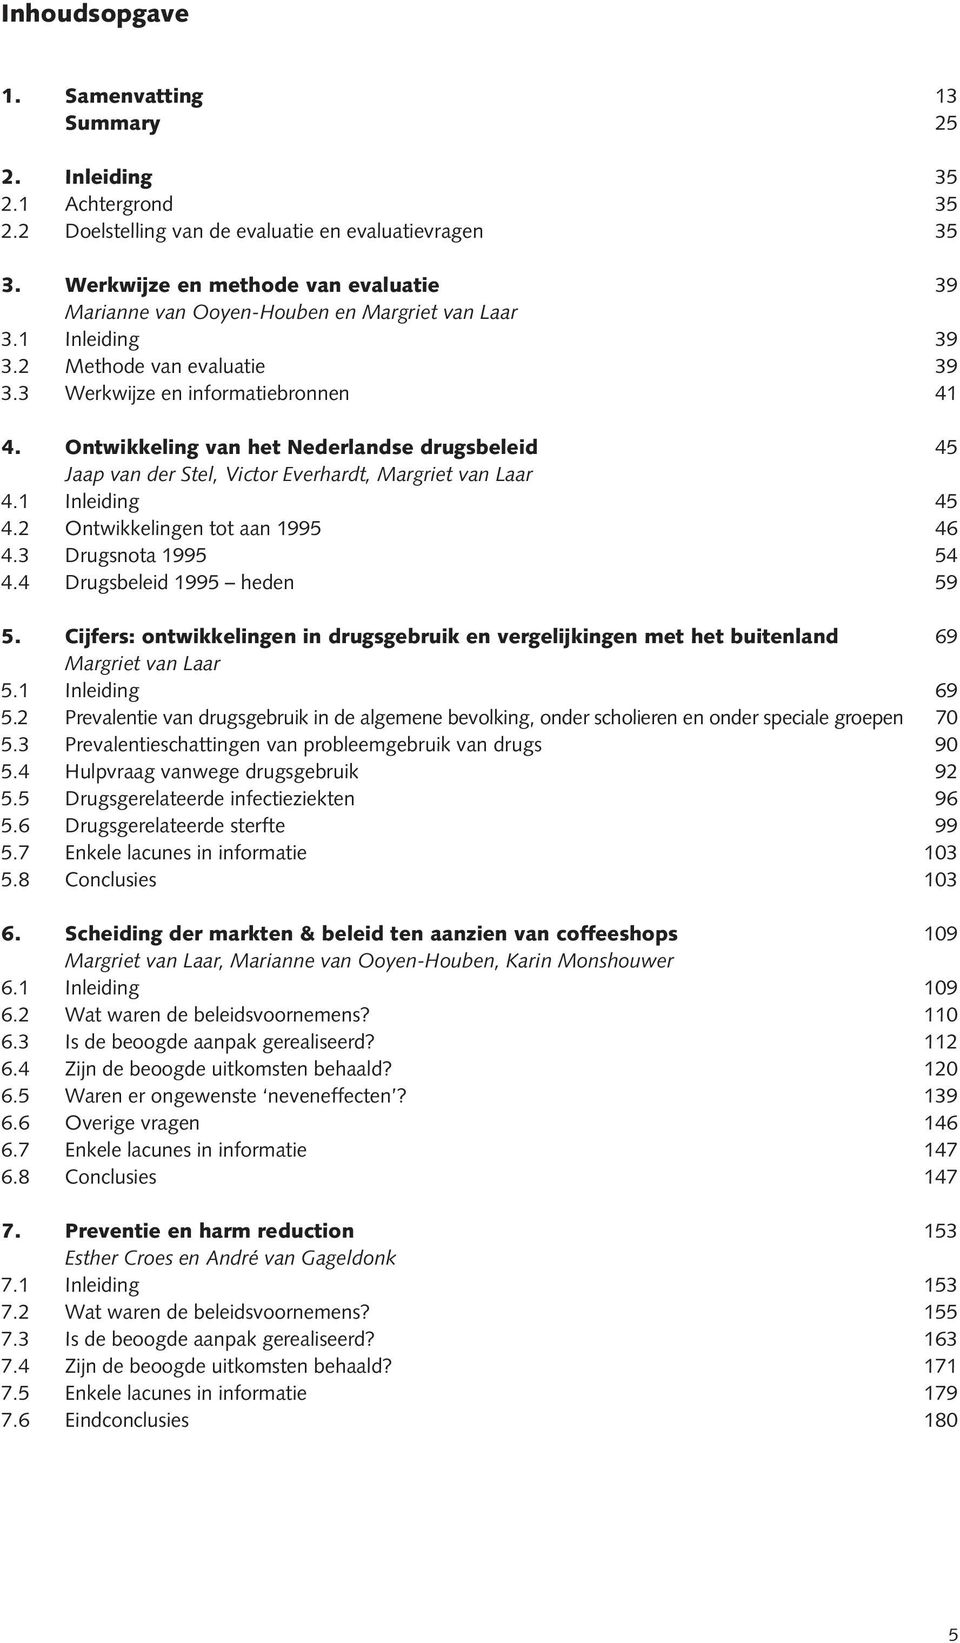 Ontwikkeling van het Nederlandse drugsbeleid 45 Jaap van der Stel, Victor Everhardt, Margriet van Laar 4.1 Inleiding 45 4.2 Ontwikkelingen tot aan 1995 46 4.3 Drugsnota 1995 54 4.